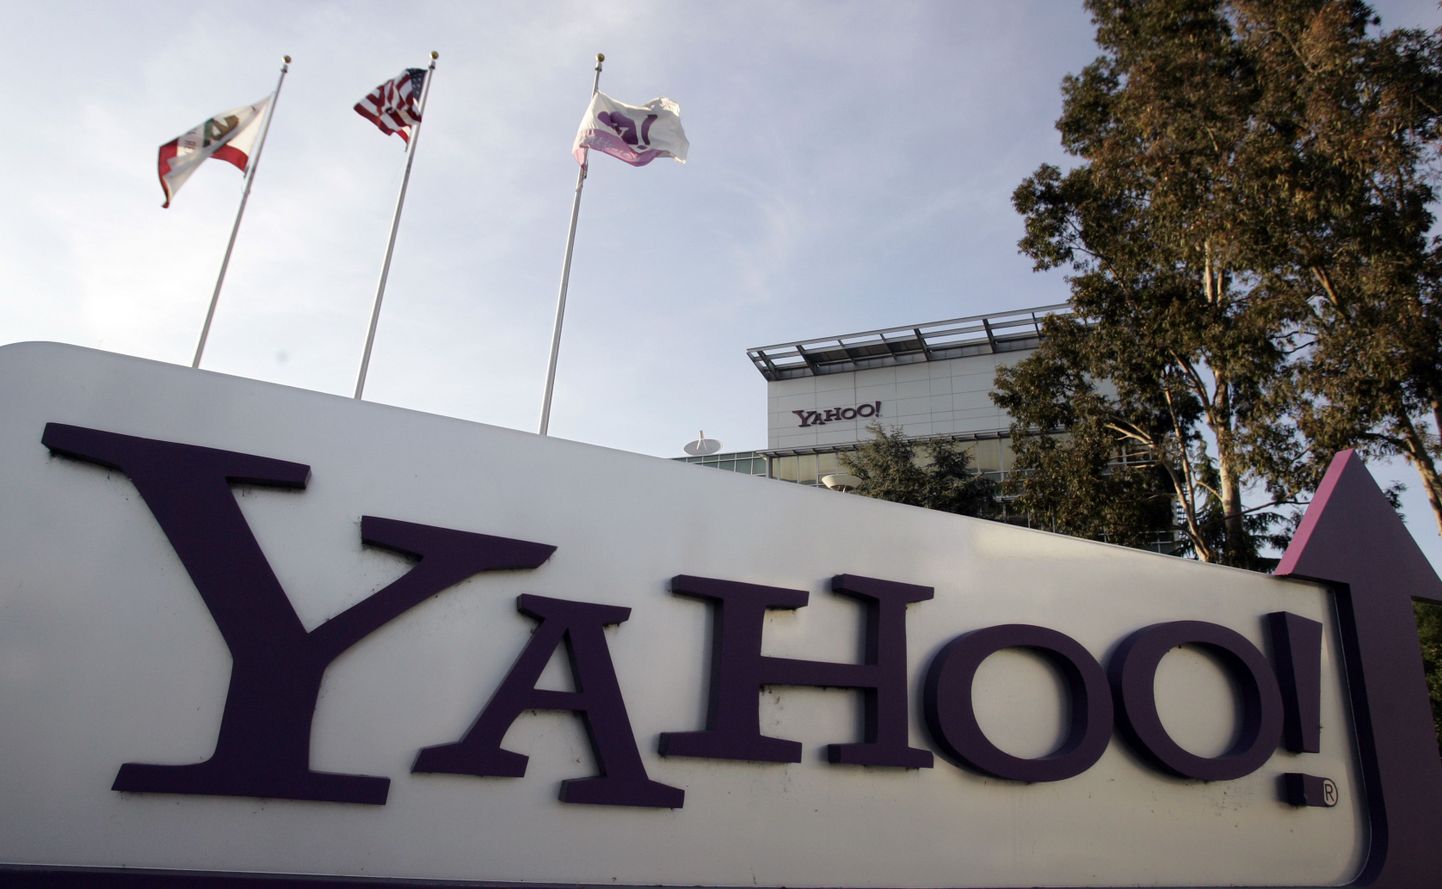 Yahoo! logo Sunnyvale'is Californias asuval peakorteris.